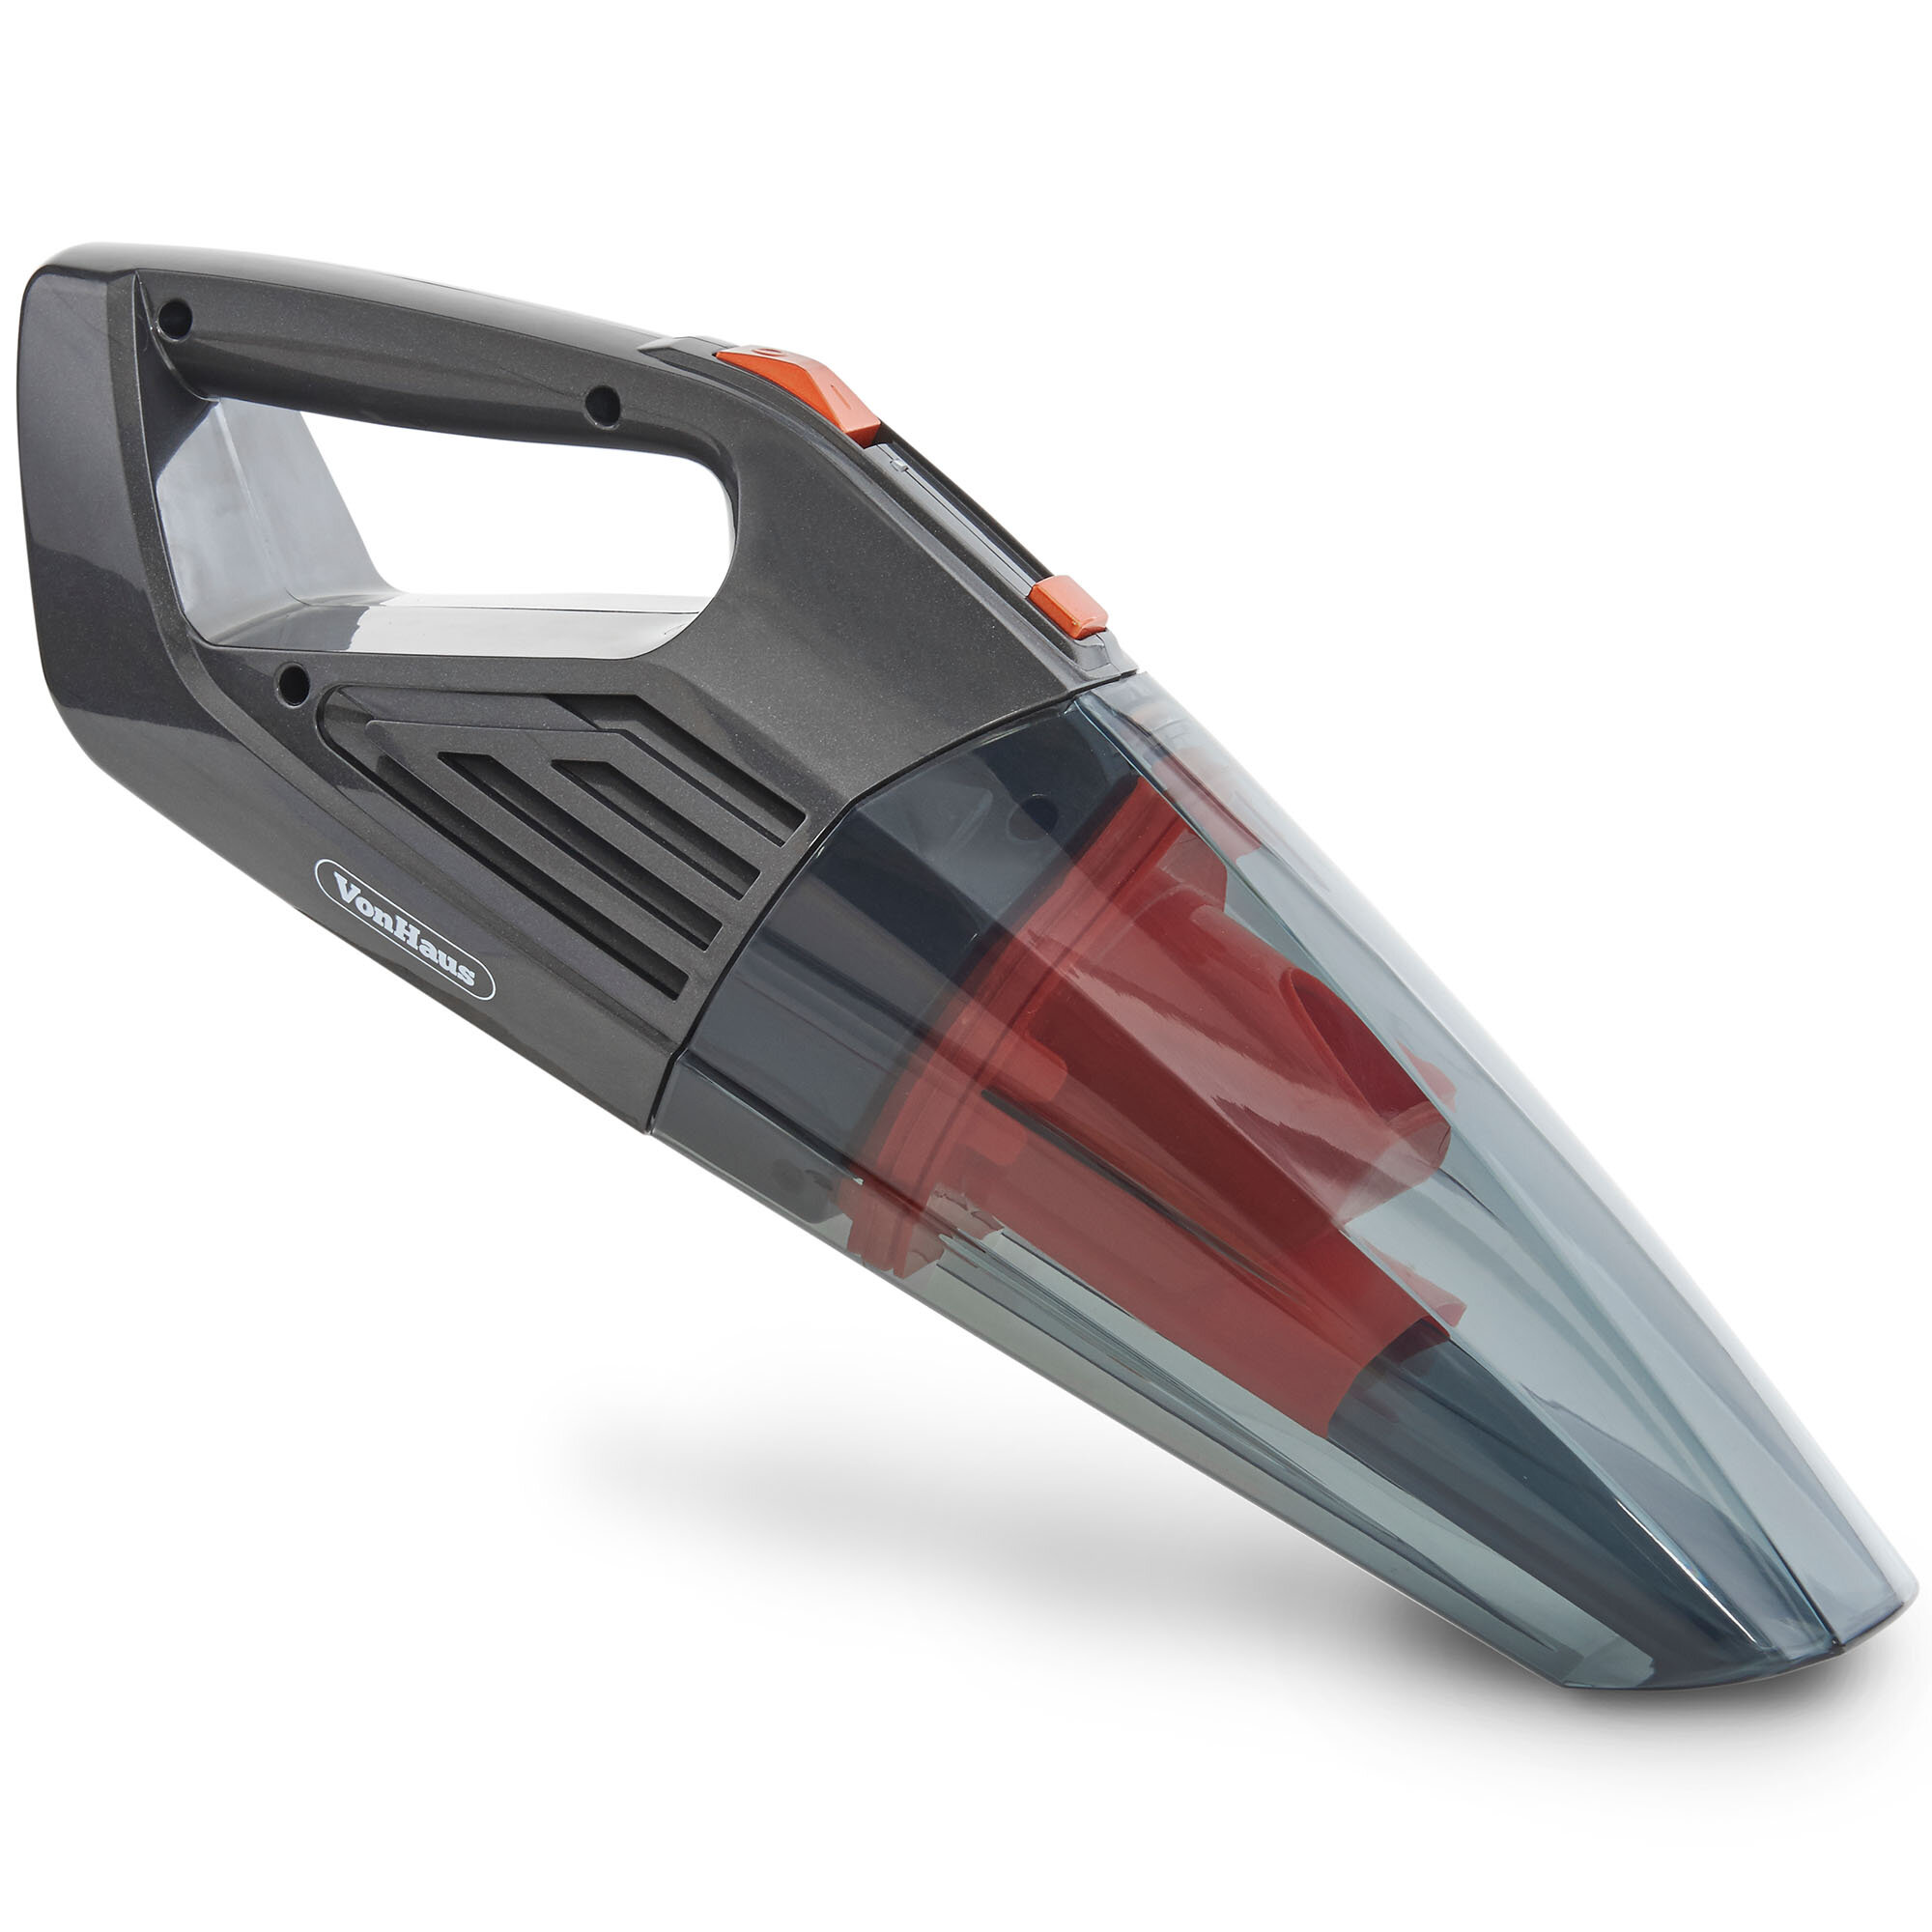 Vonhaus Bagless Handheld Vacuum Cleaner Reviews Wayfair Co Uk